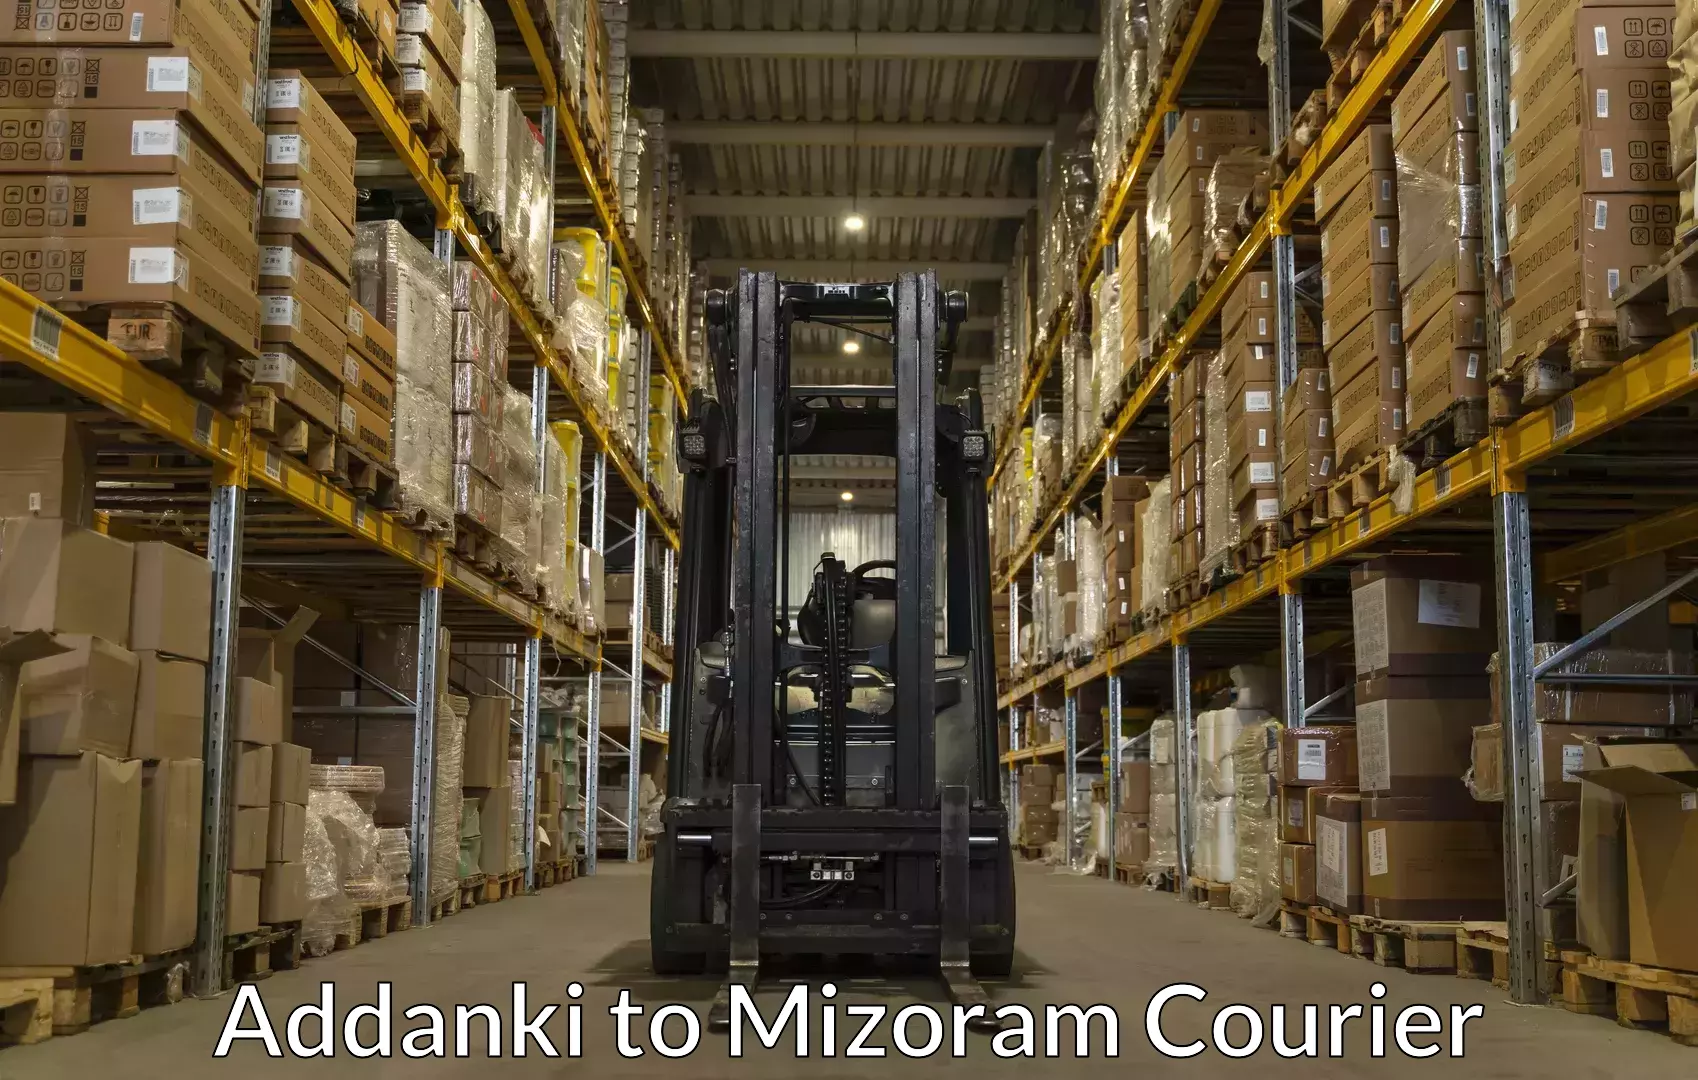 Door-to-door relocation services Addanki to Mizoram